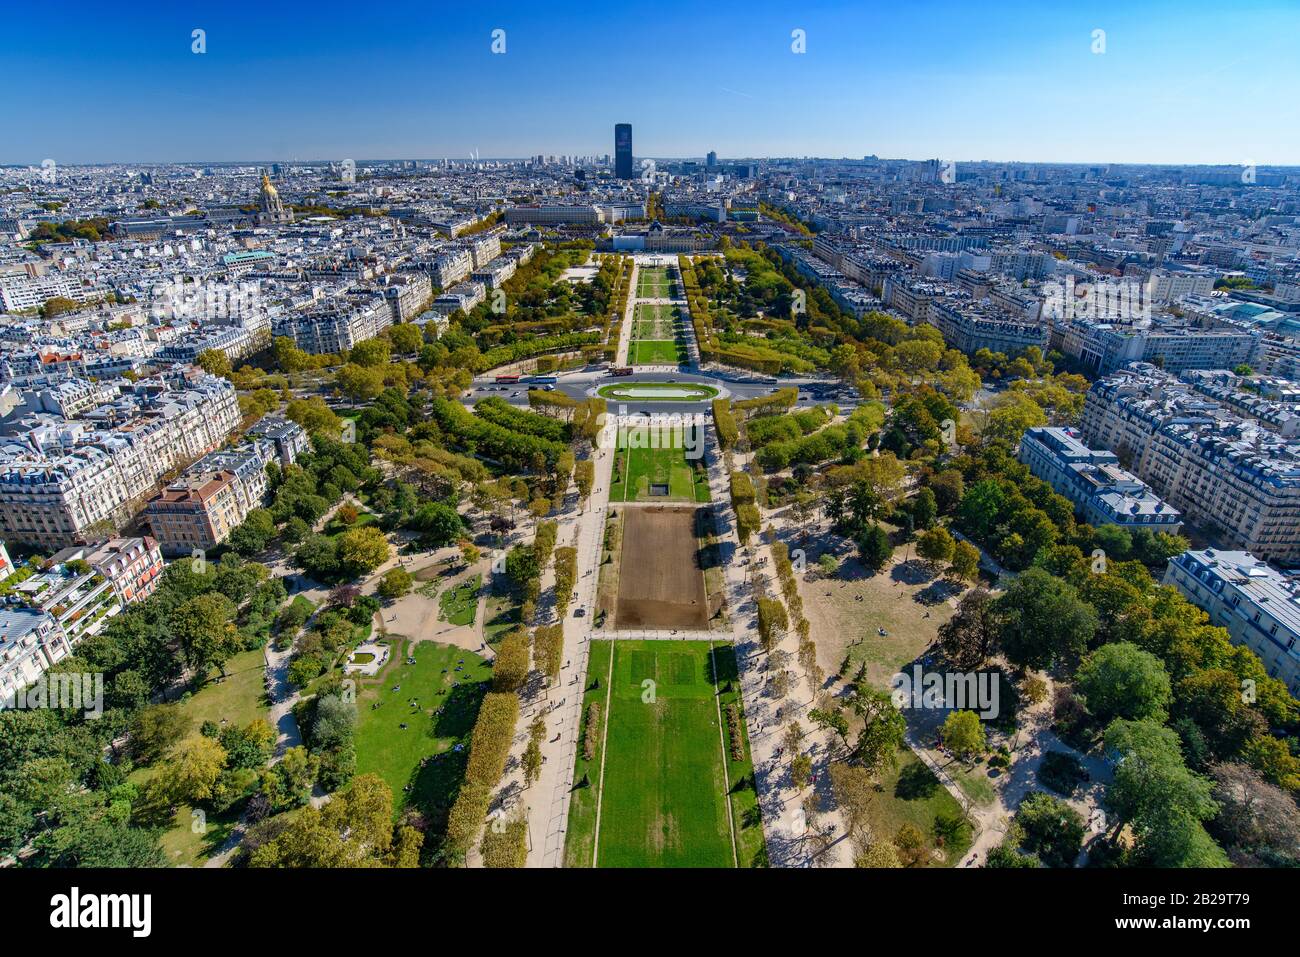 Vue aérienne du parc champ de Mars depuis la Tour Eiffel, Paris, France, Europe Banque D'Images